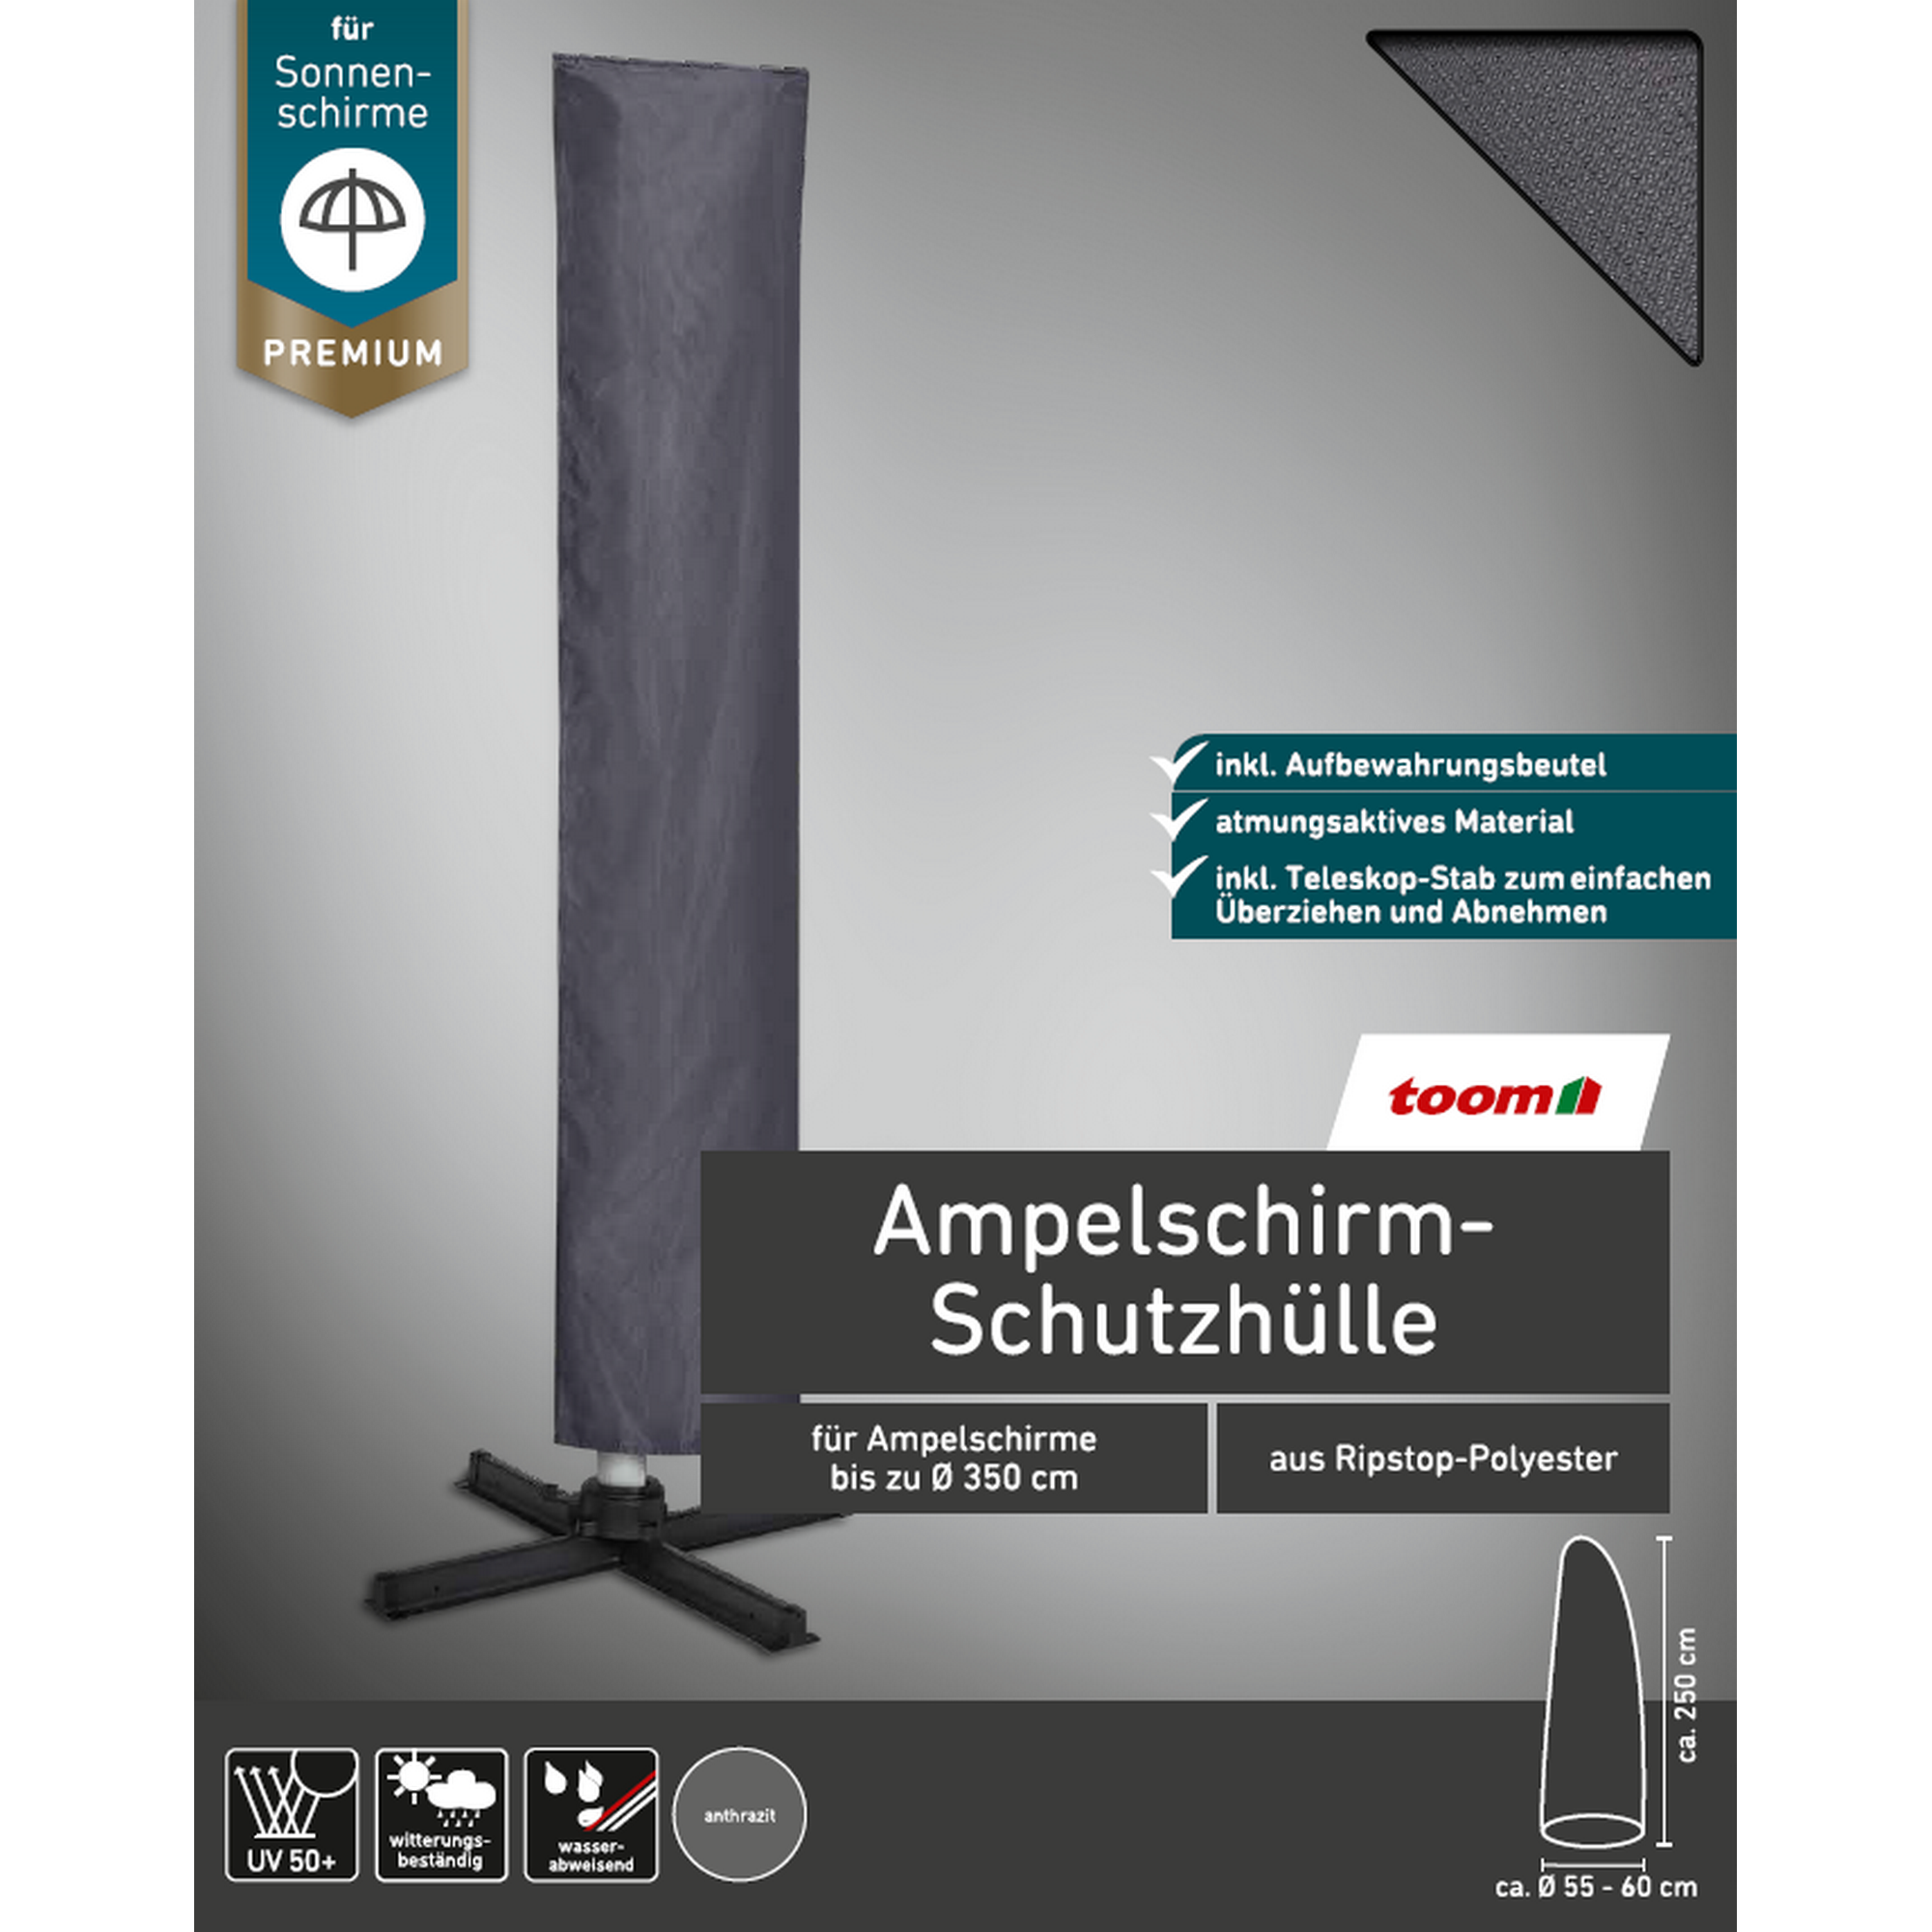 Premium-Schutzhülle für Ampelschirme bis Ø 350 cm + product picture